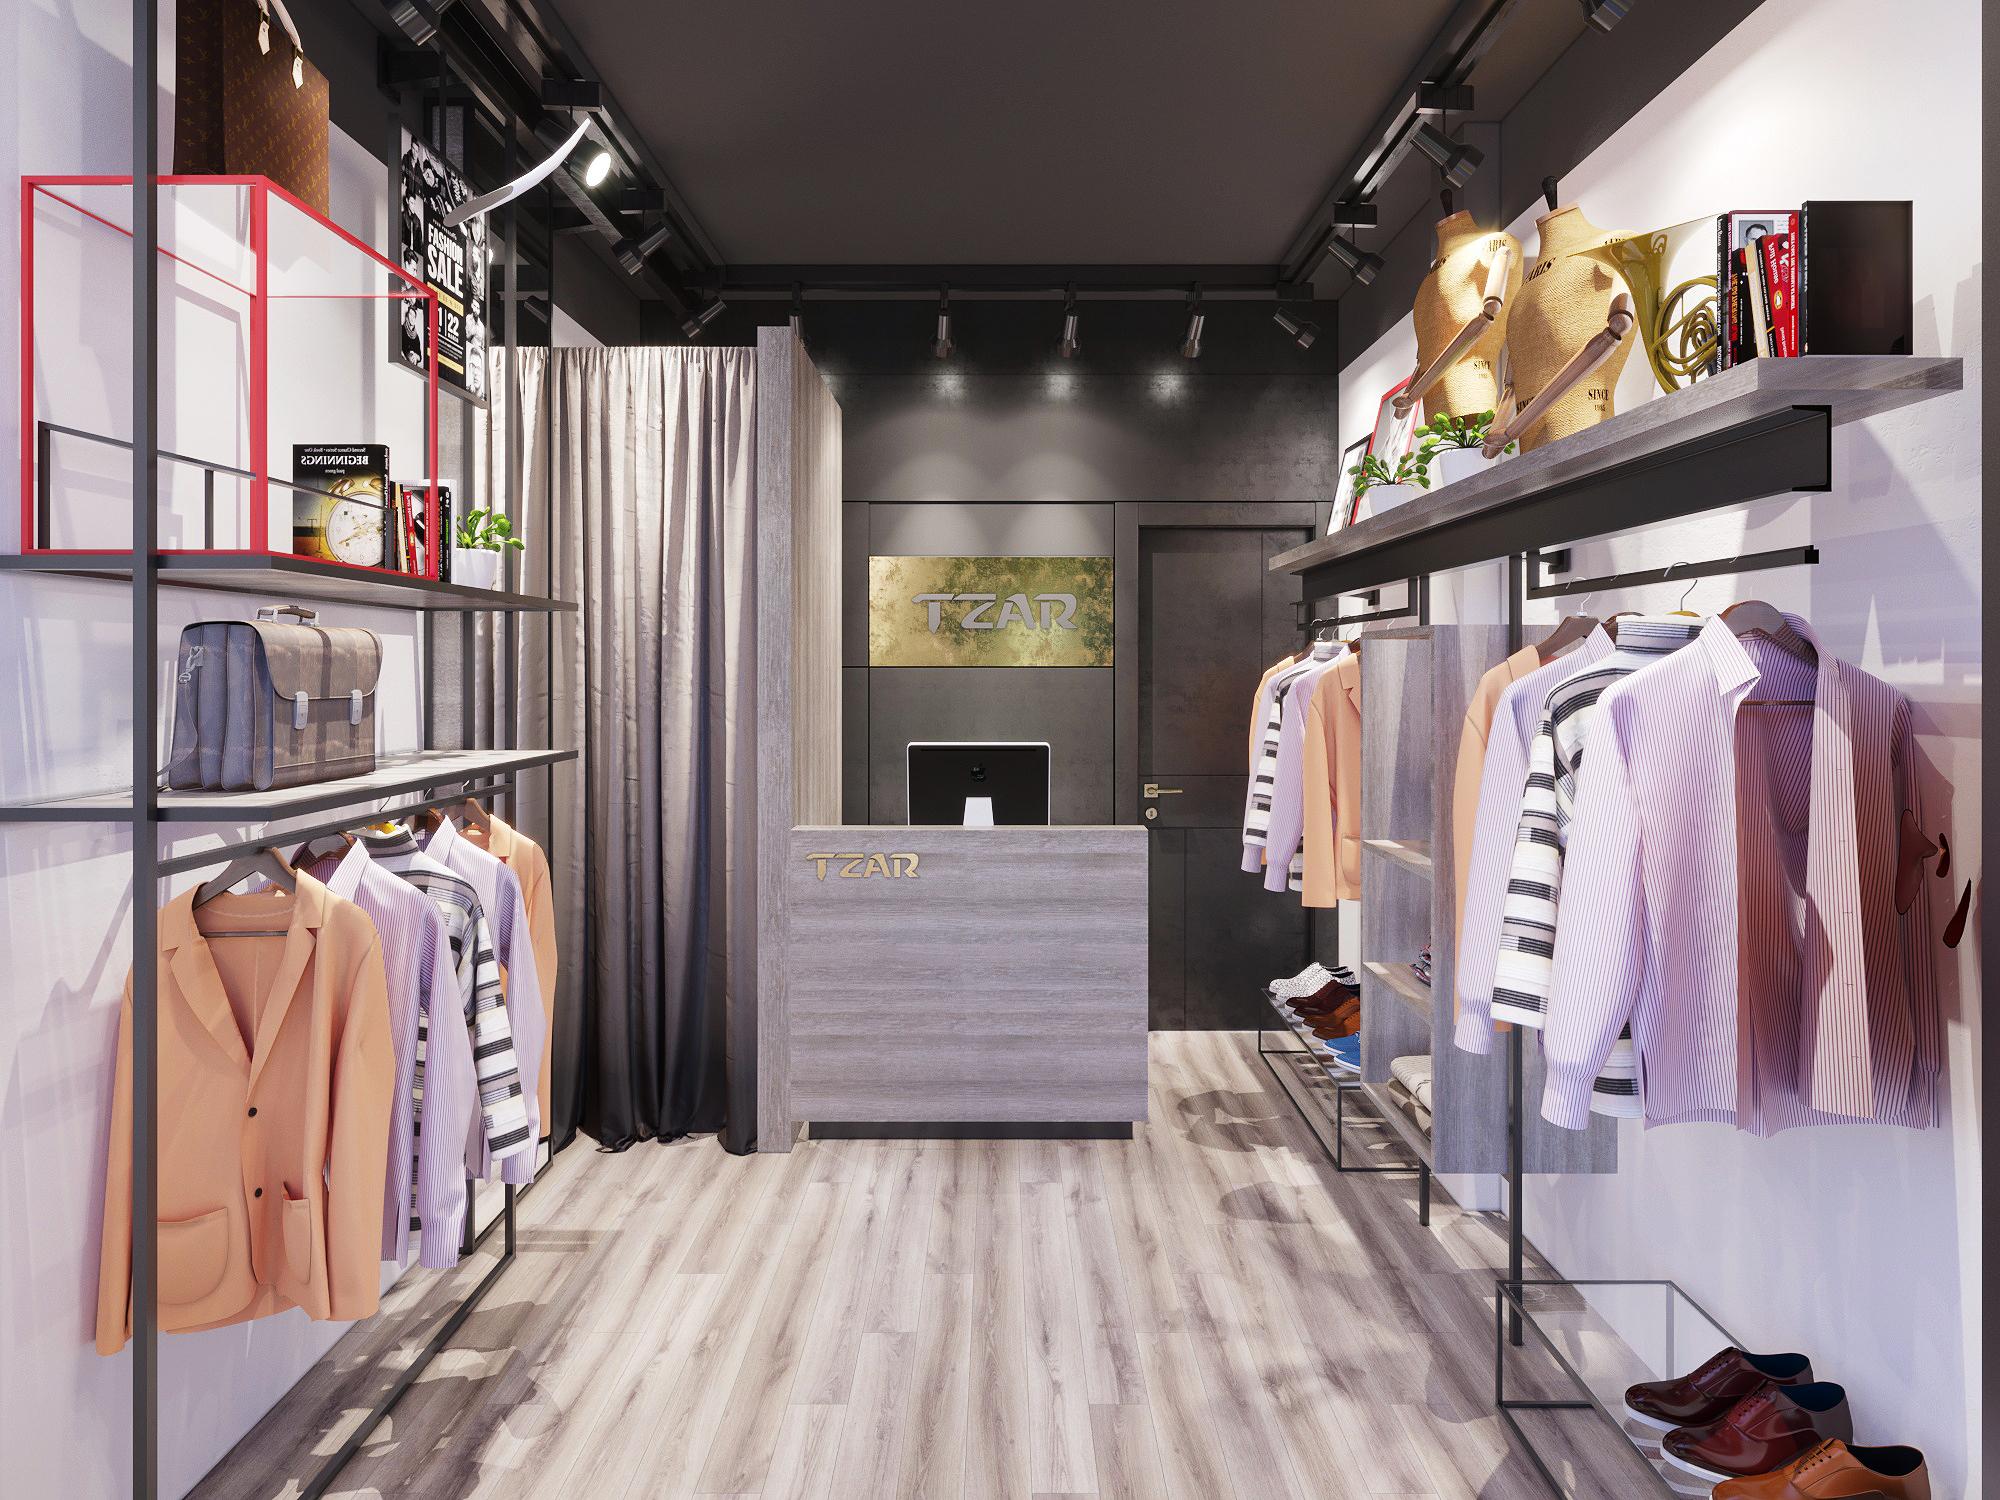 Kinh doanh shop quần áo cần những gì 6 kinh nghiệm hay nhất  Tài Chính  Online